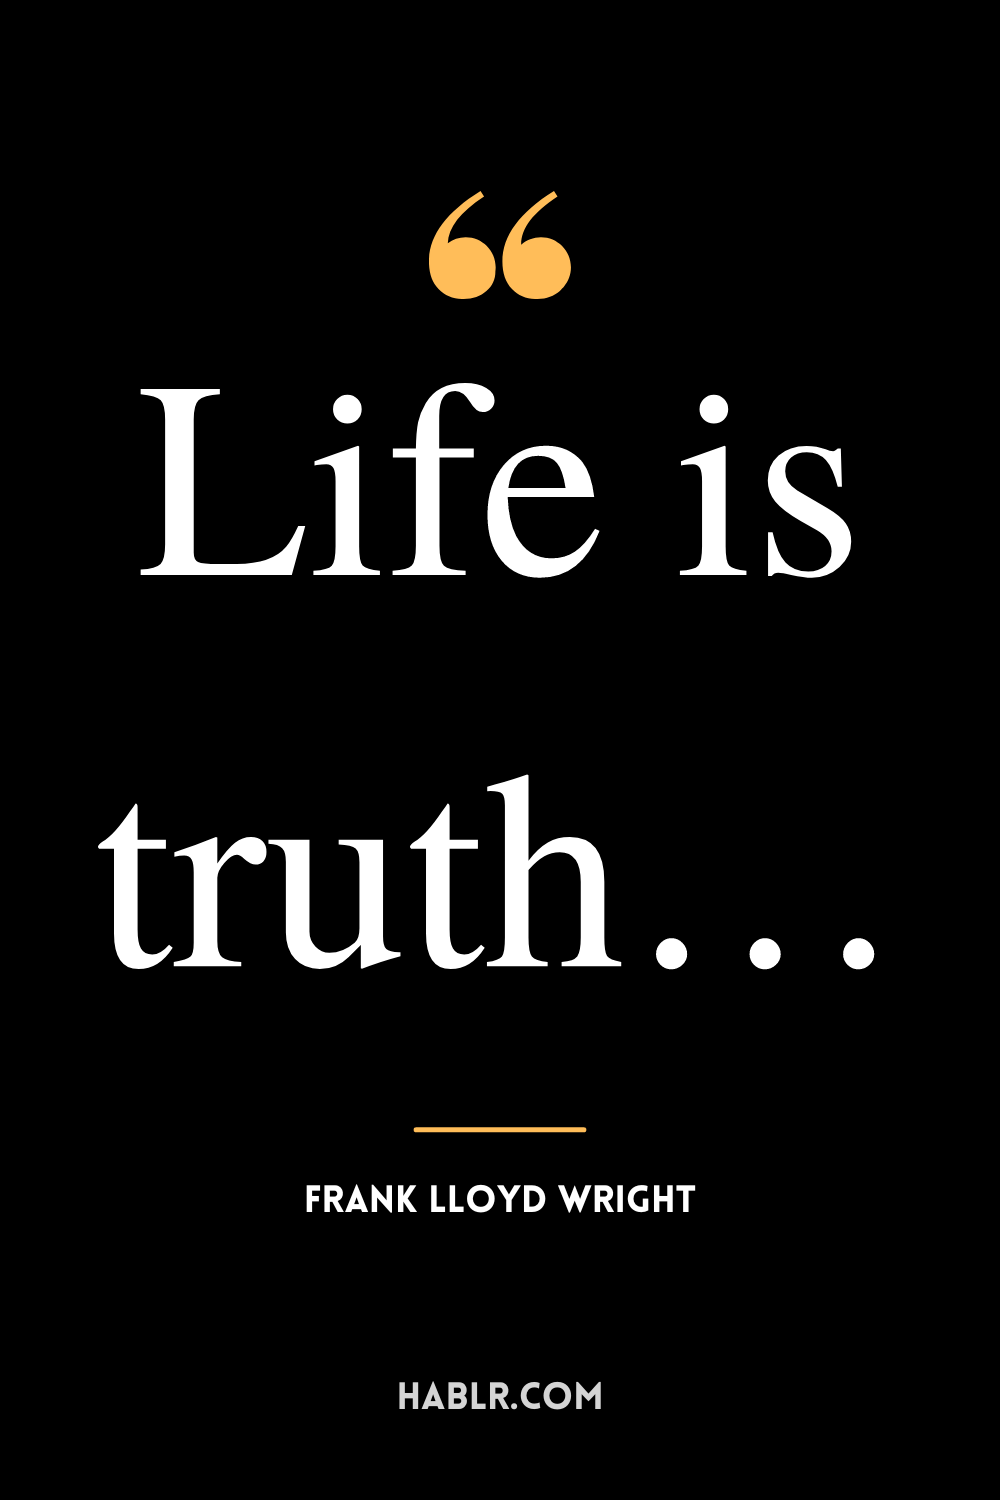 “Life is truth…” -Frank Lloyd Wright